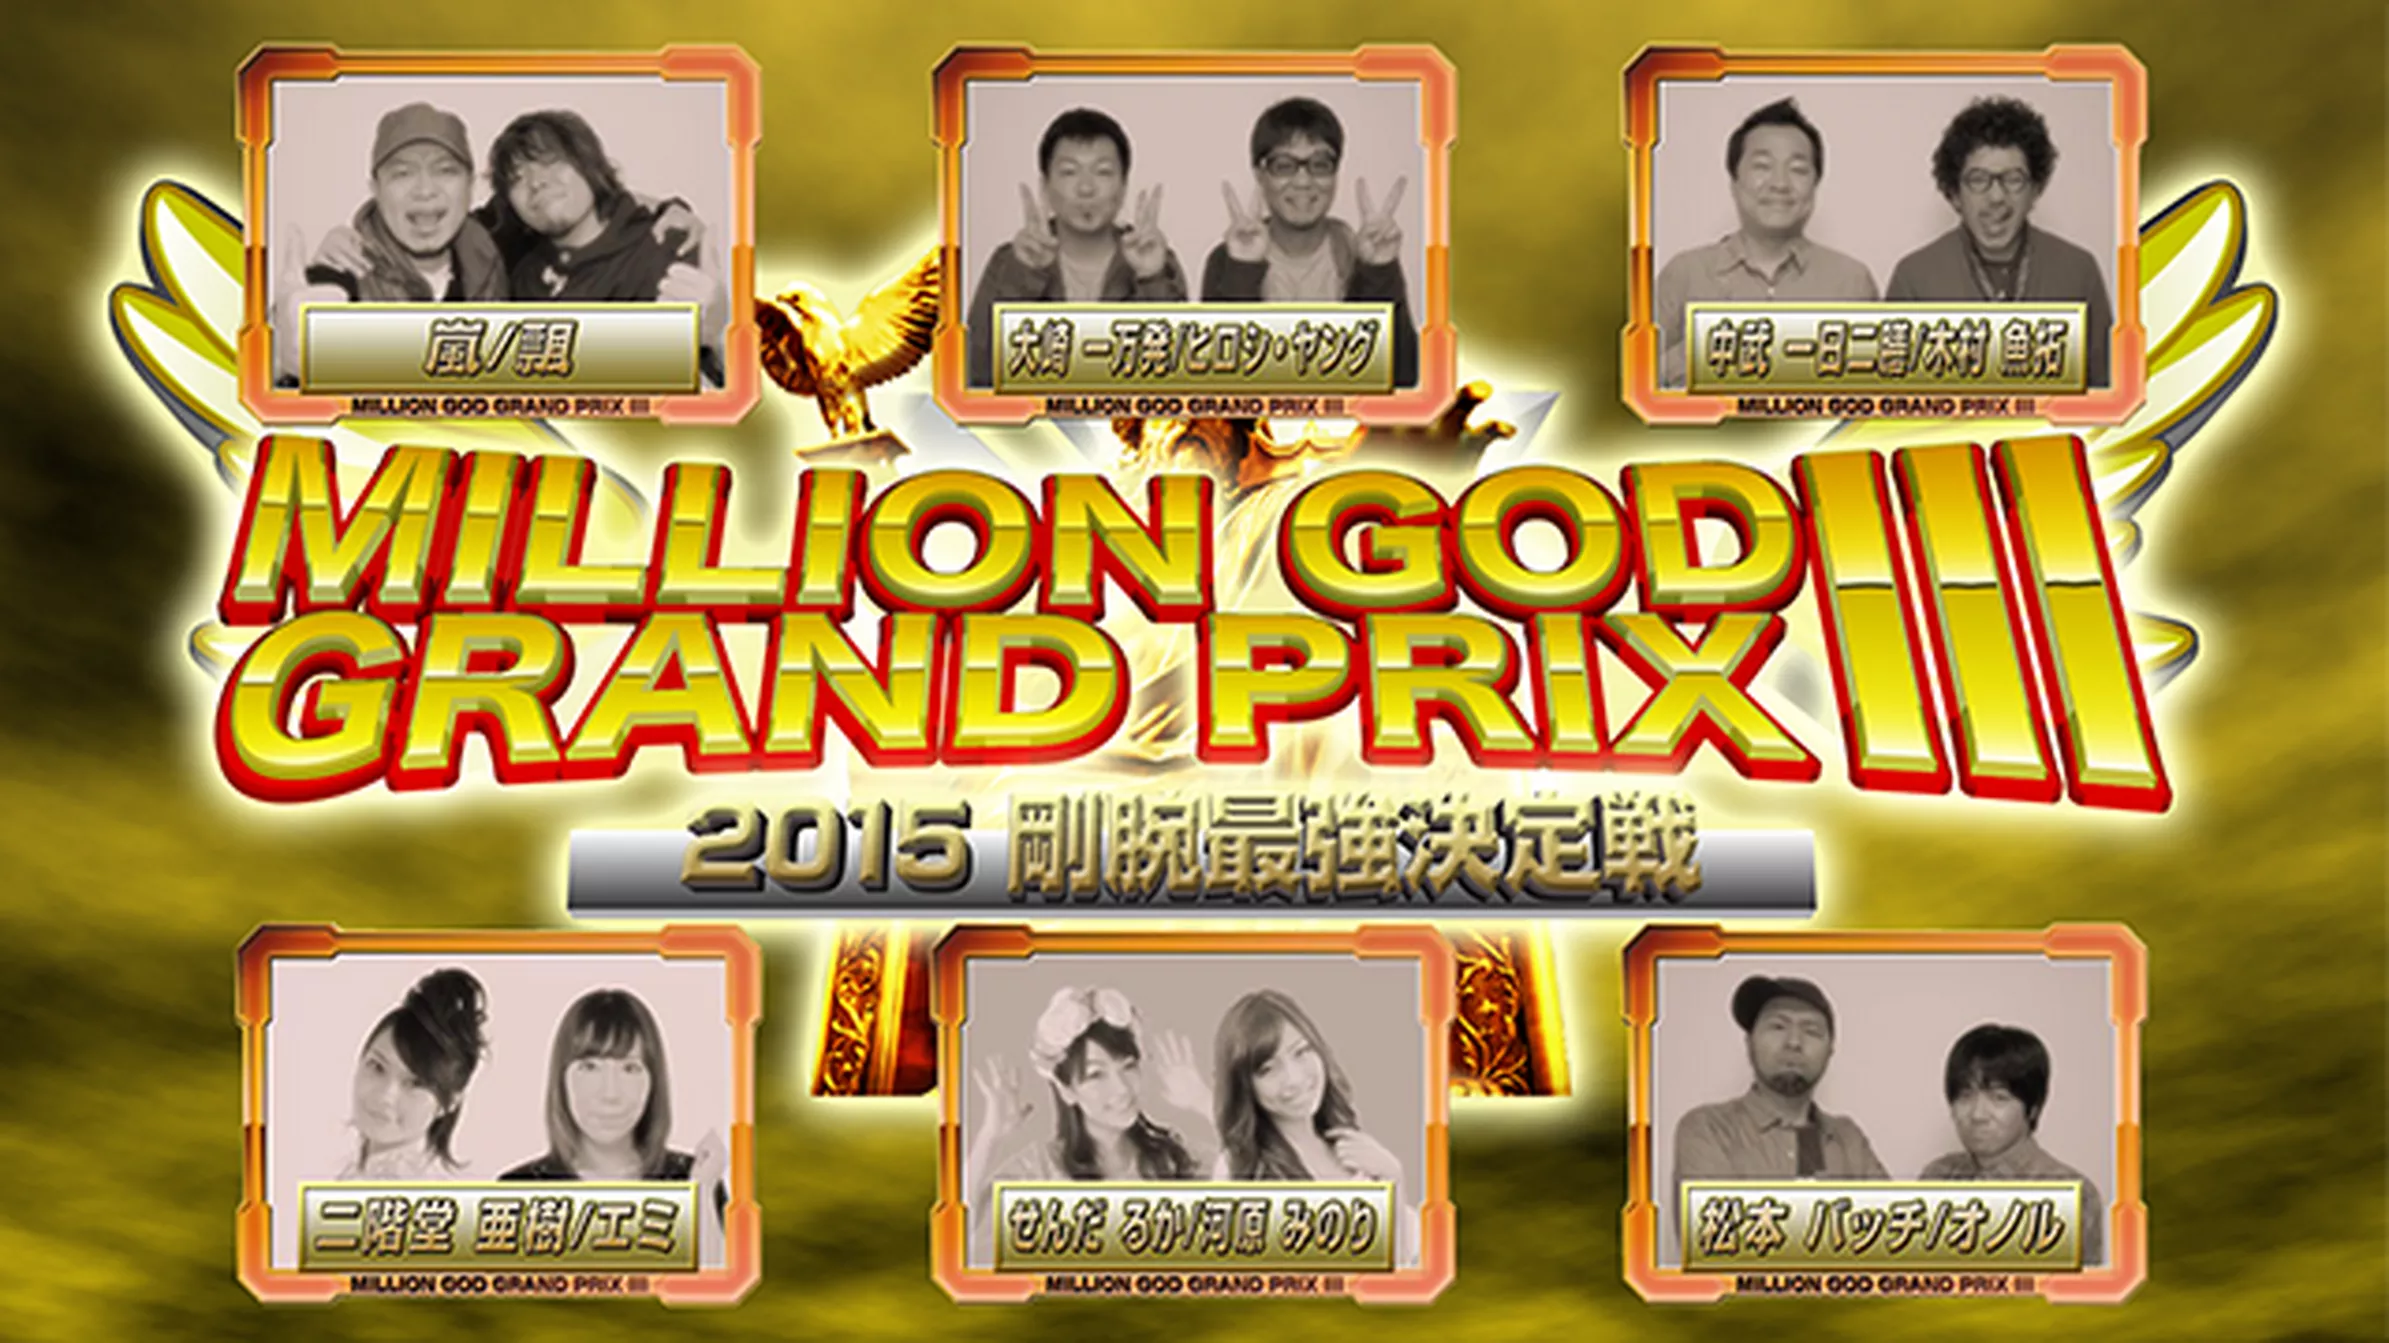 【特番】MILLION GOD GRAND PRIX IIIー2015剛腕最強決定戦ー【3部作特別版】